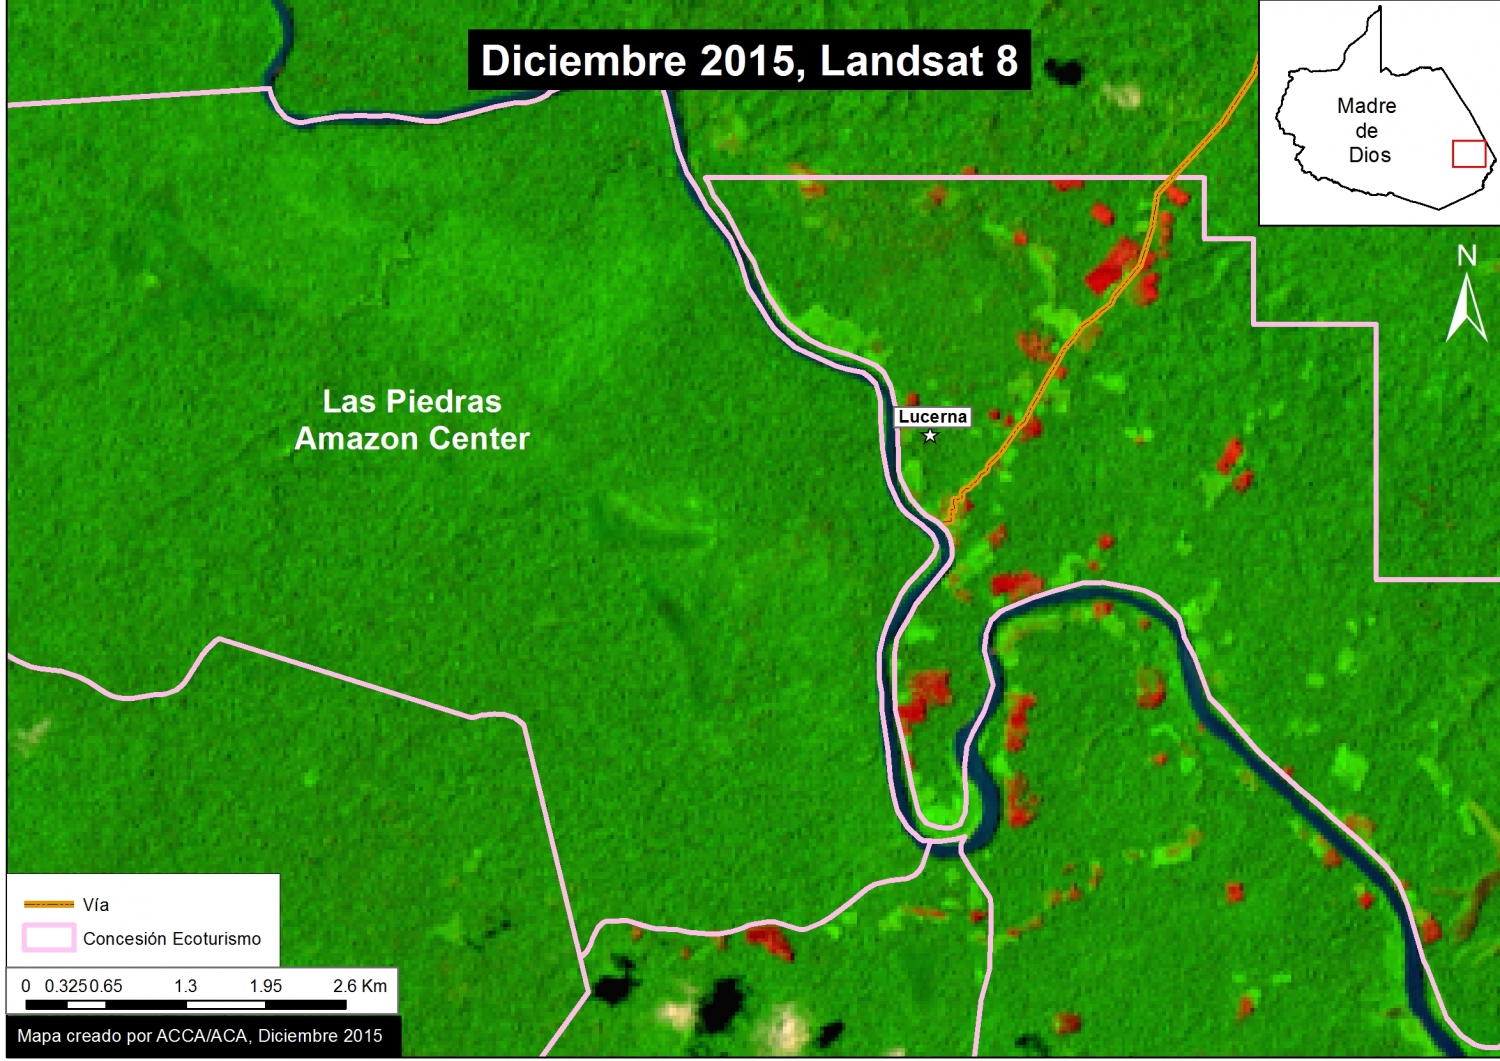 Imagen Xc. Una reciente imagen satelital muestra deforestación a lo largo del bajo río Las Piedras. Datos: USGS,MINAGRI.